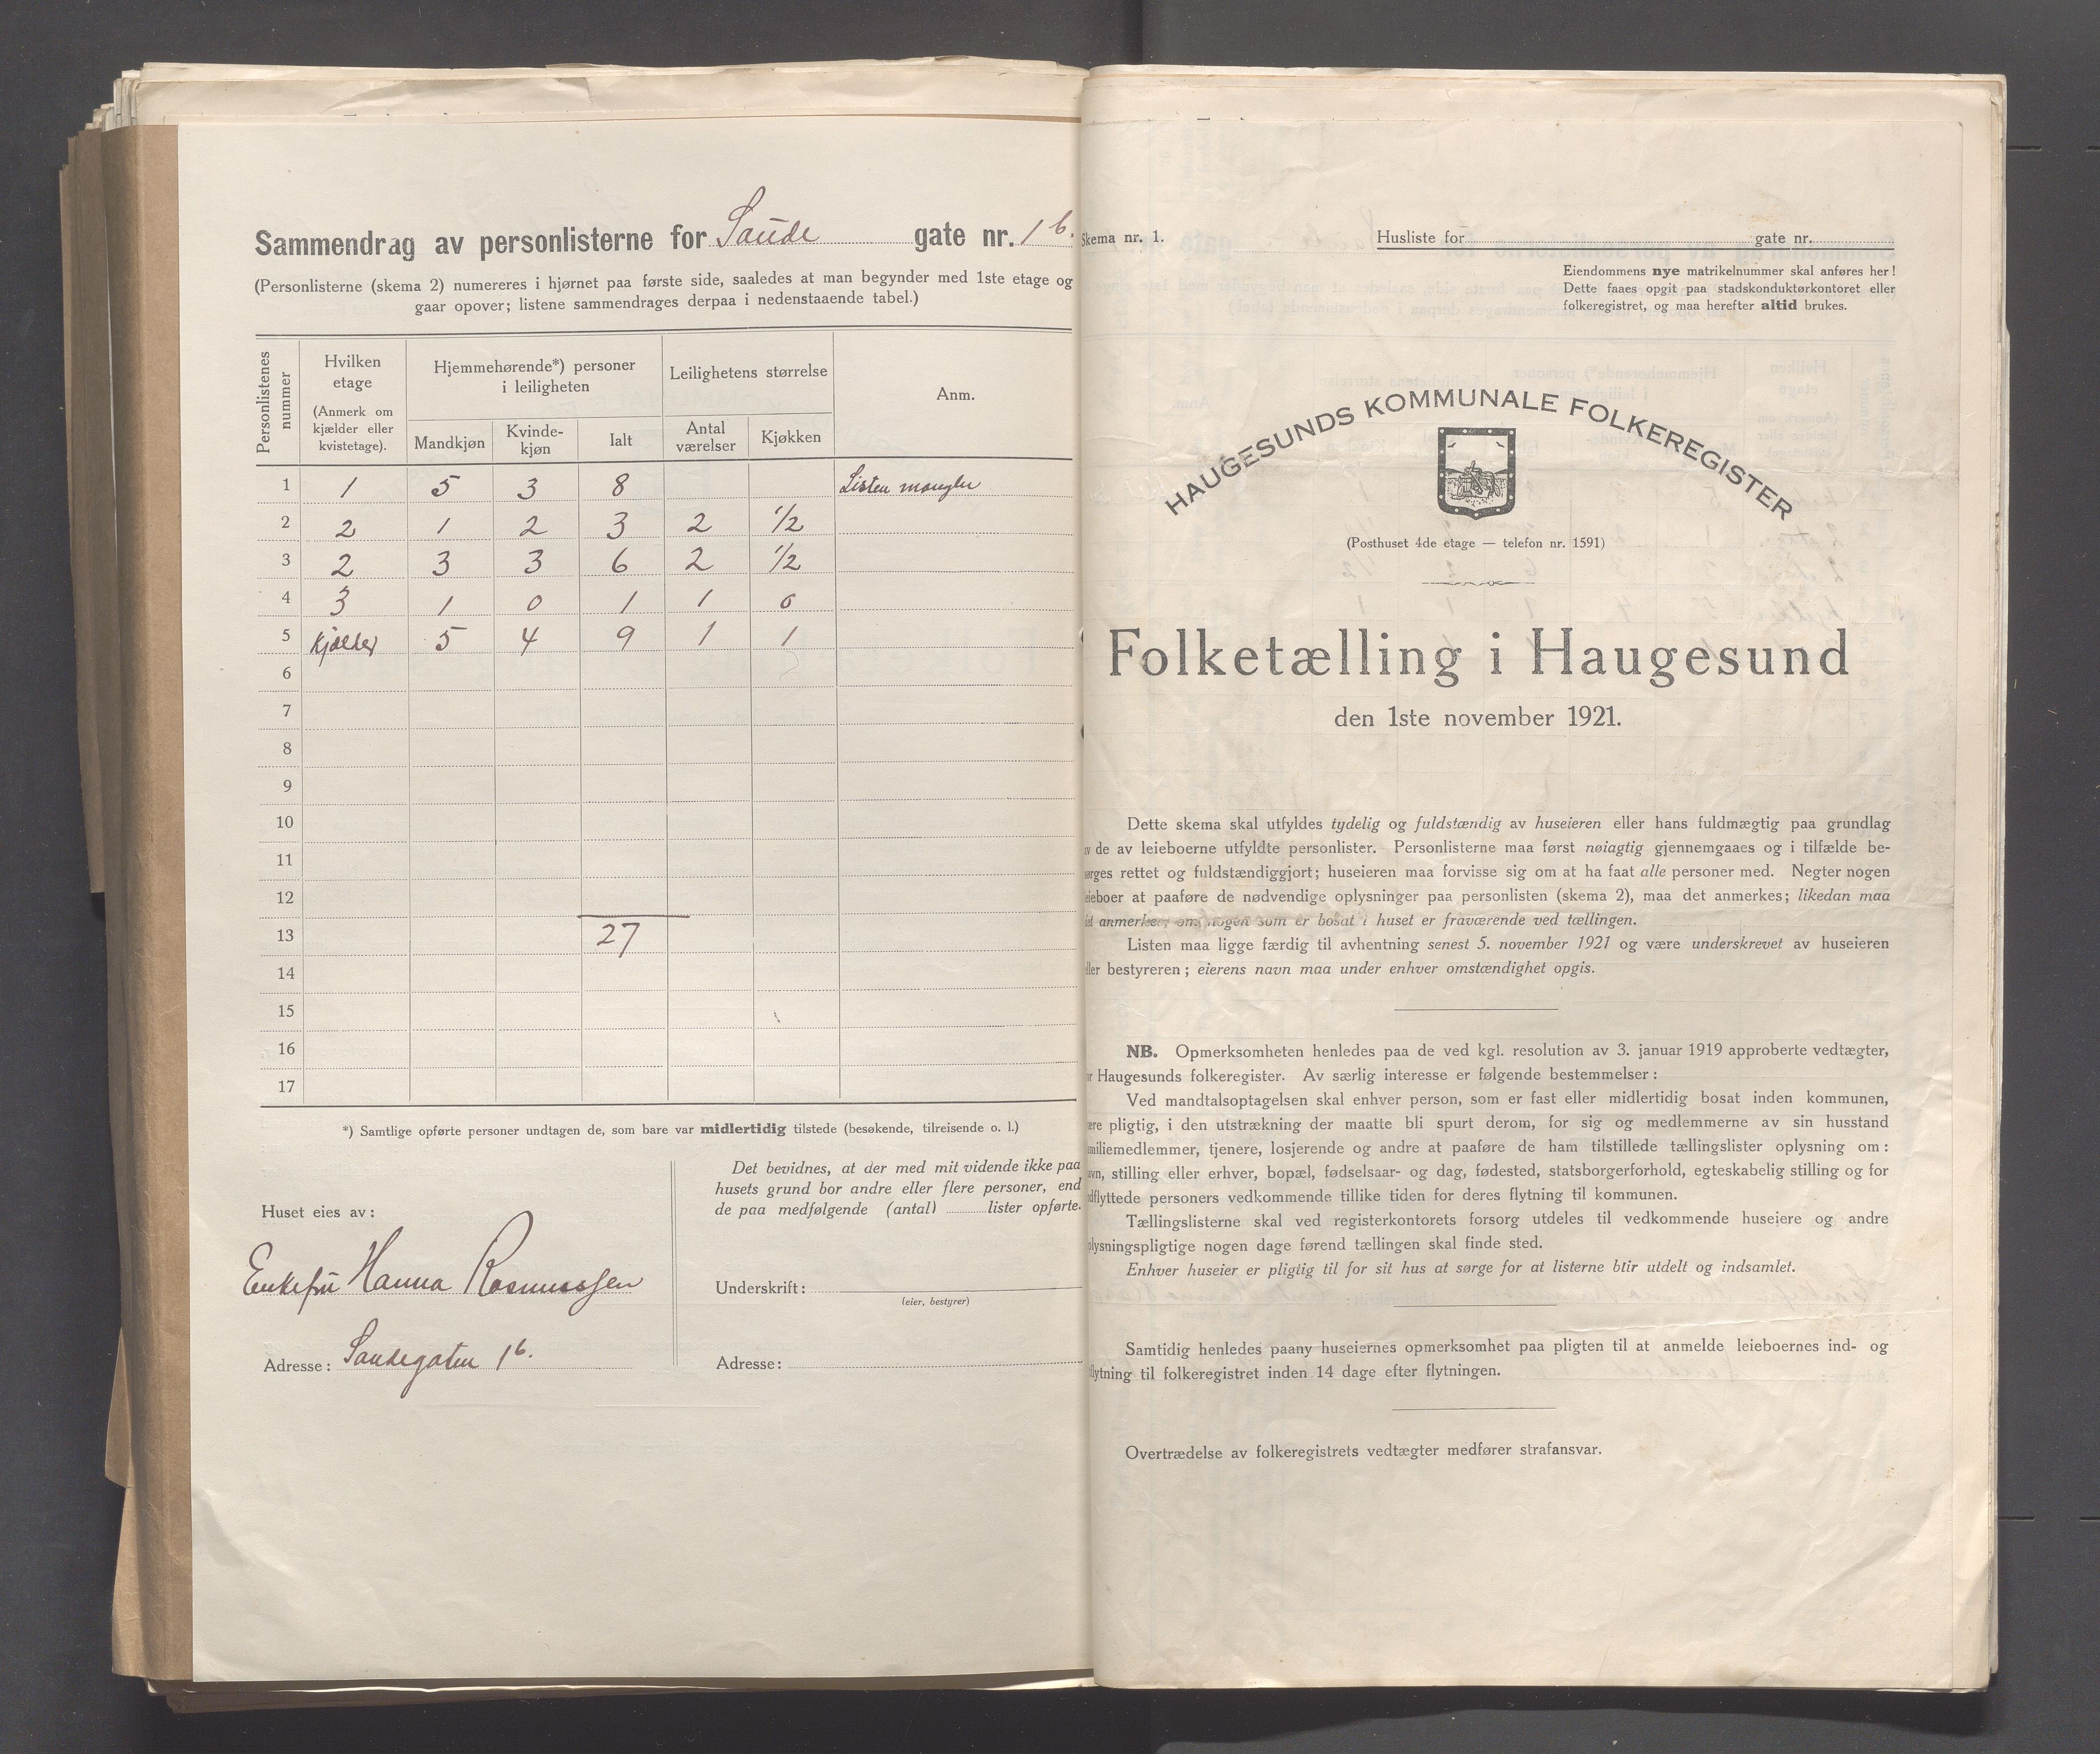 IKAR, Local census 1.11.1921 for Haugesund, 1921, p. 3595